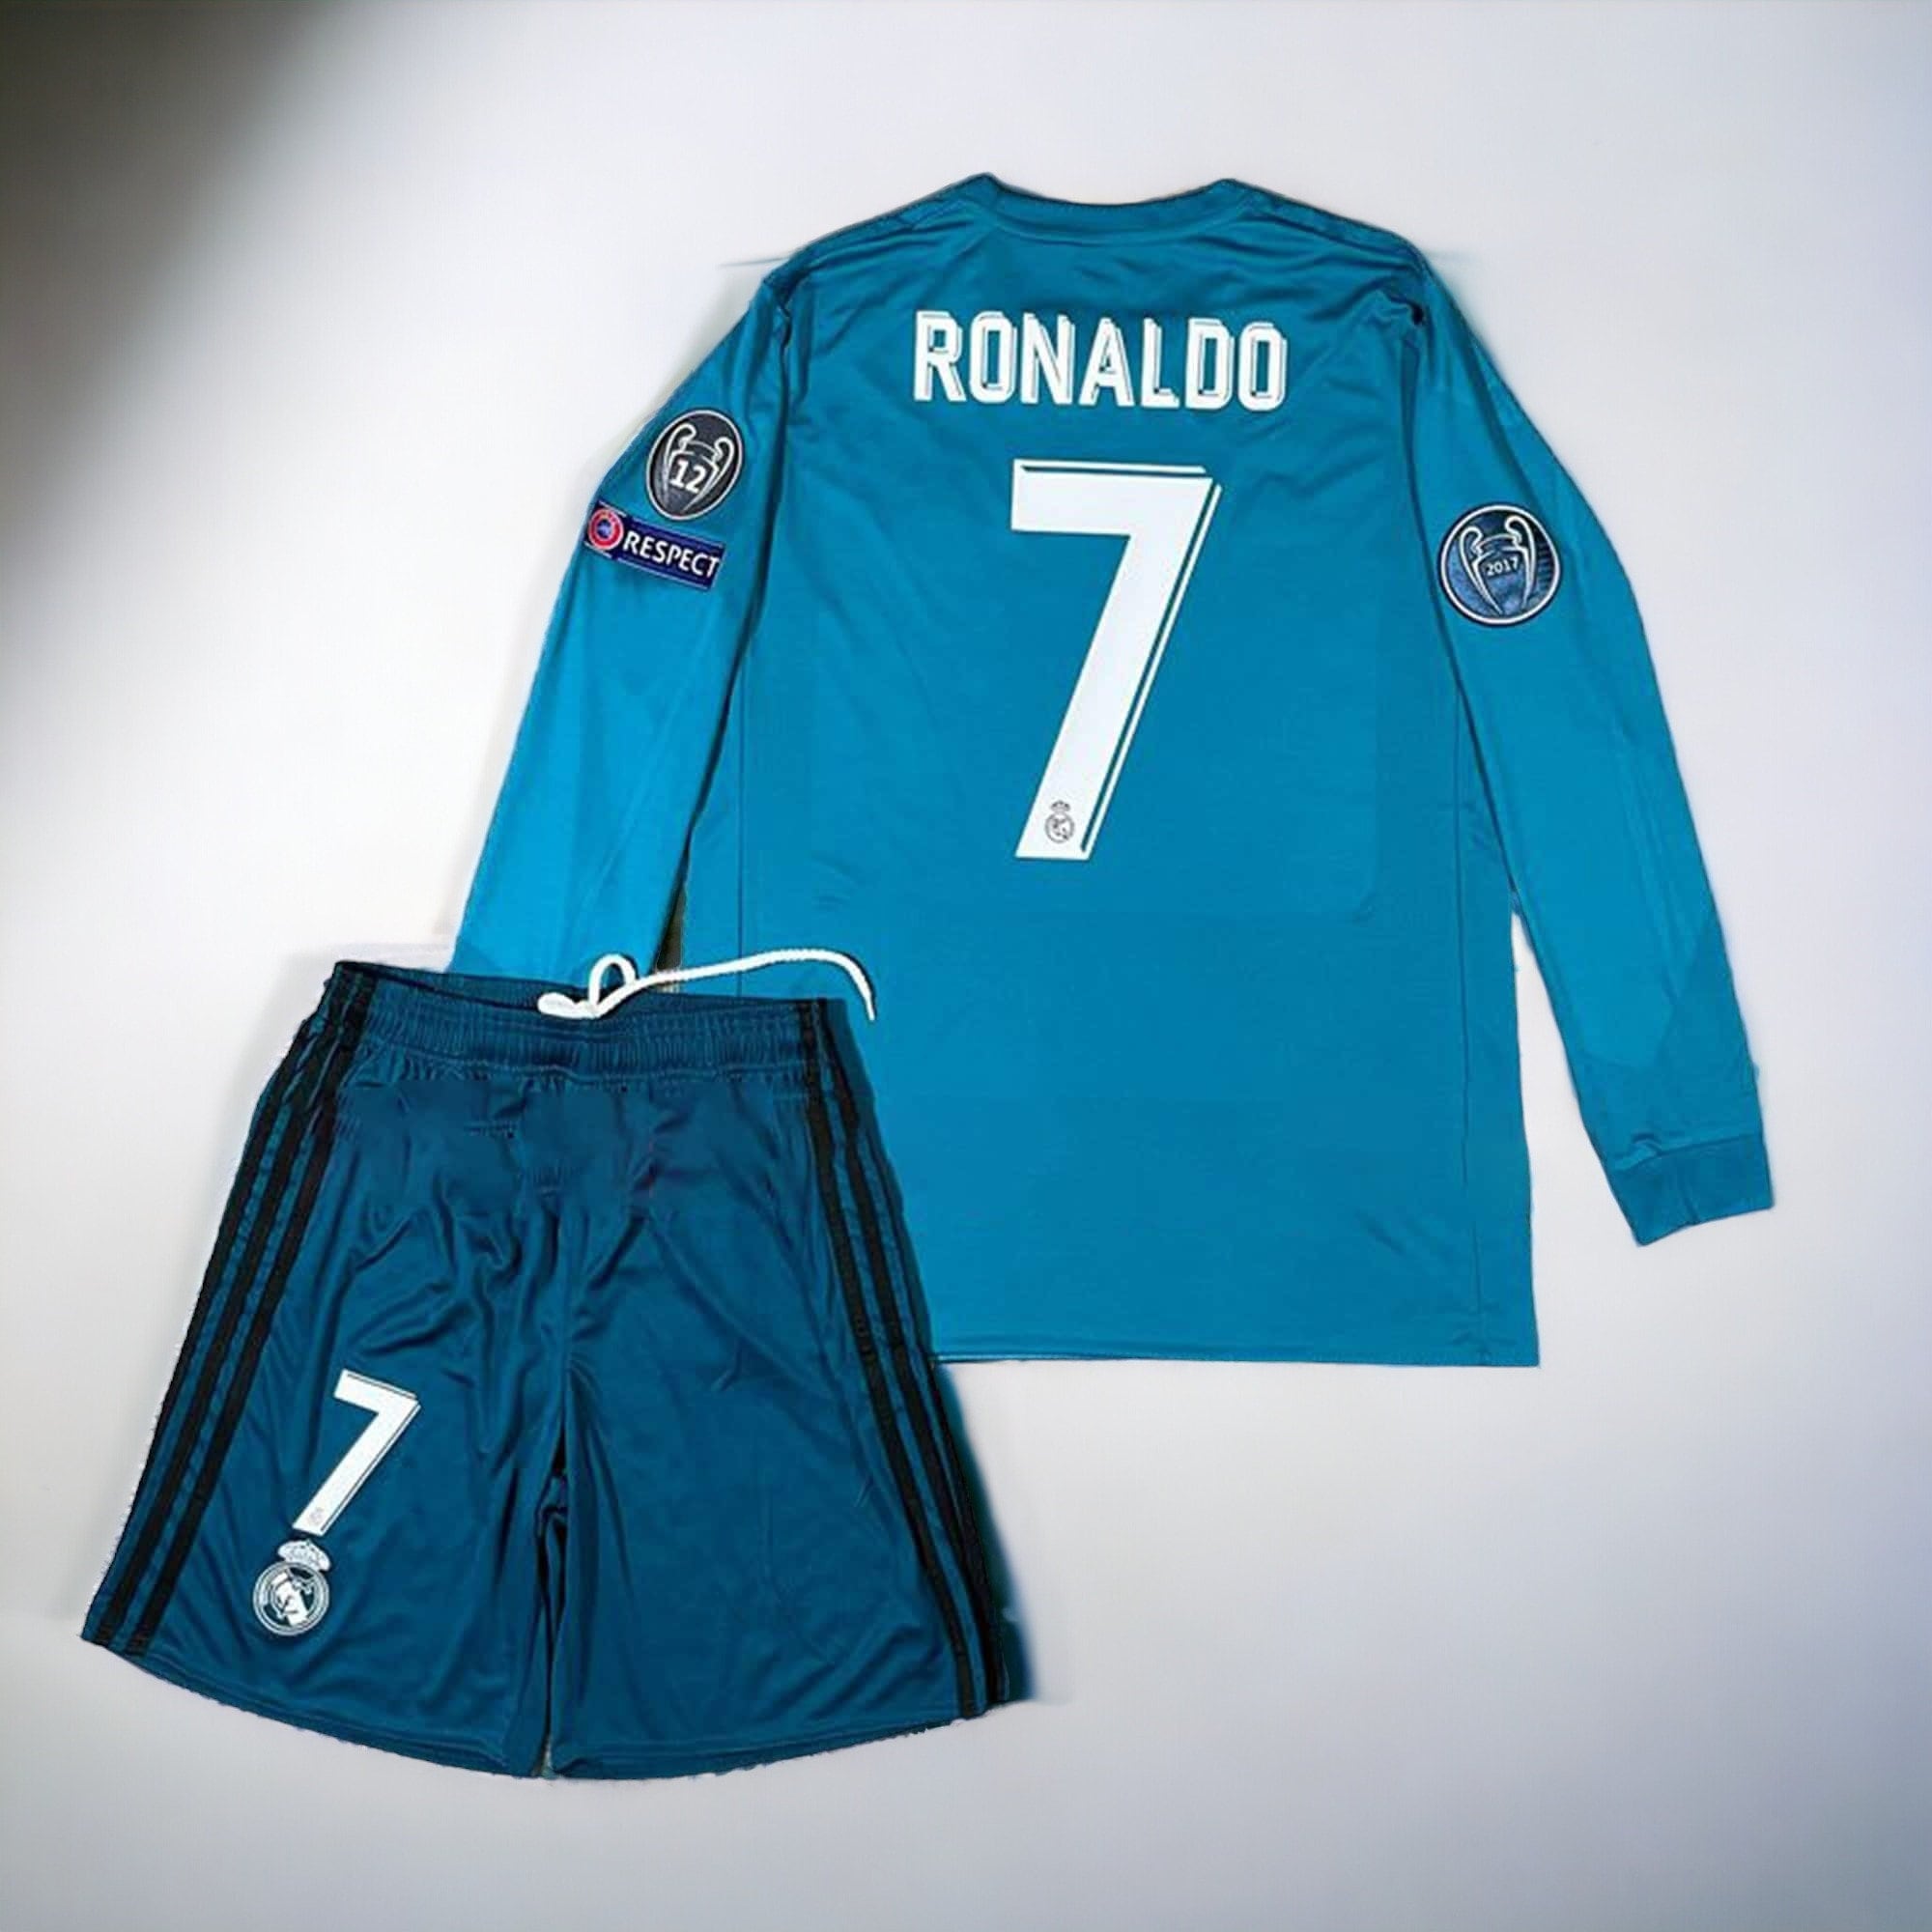 Neceser Real Madrid Vintage RM